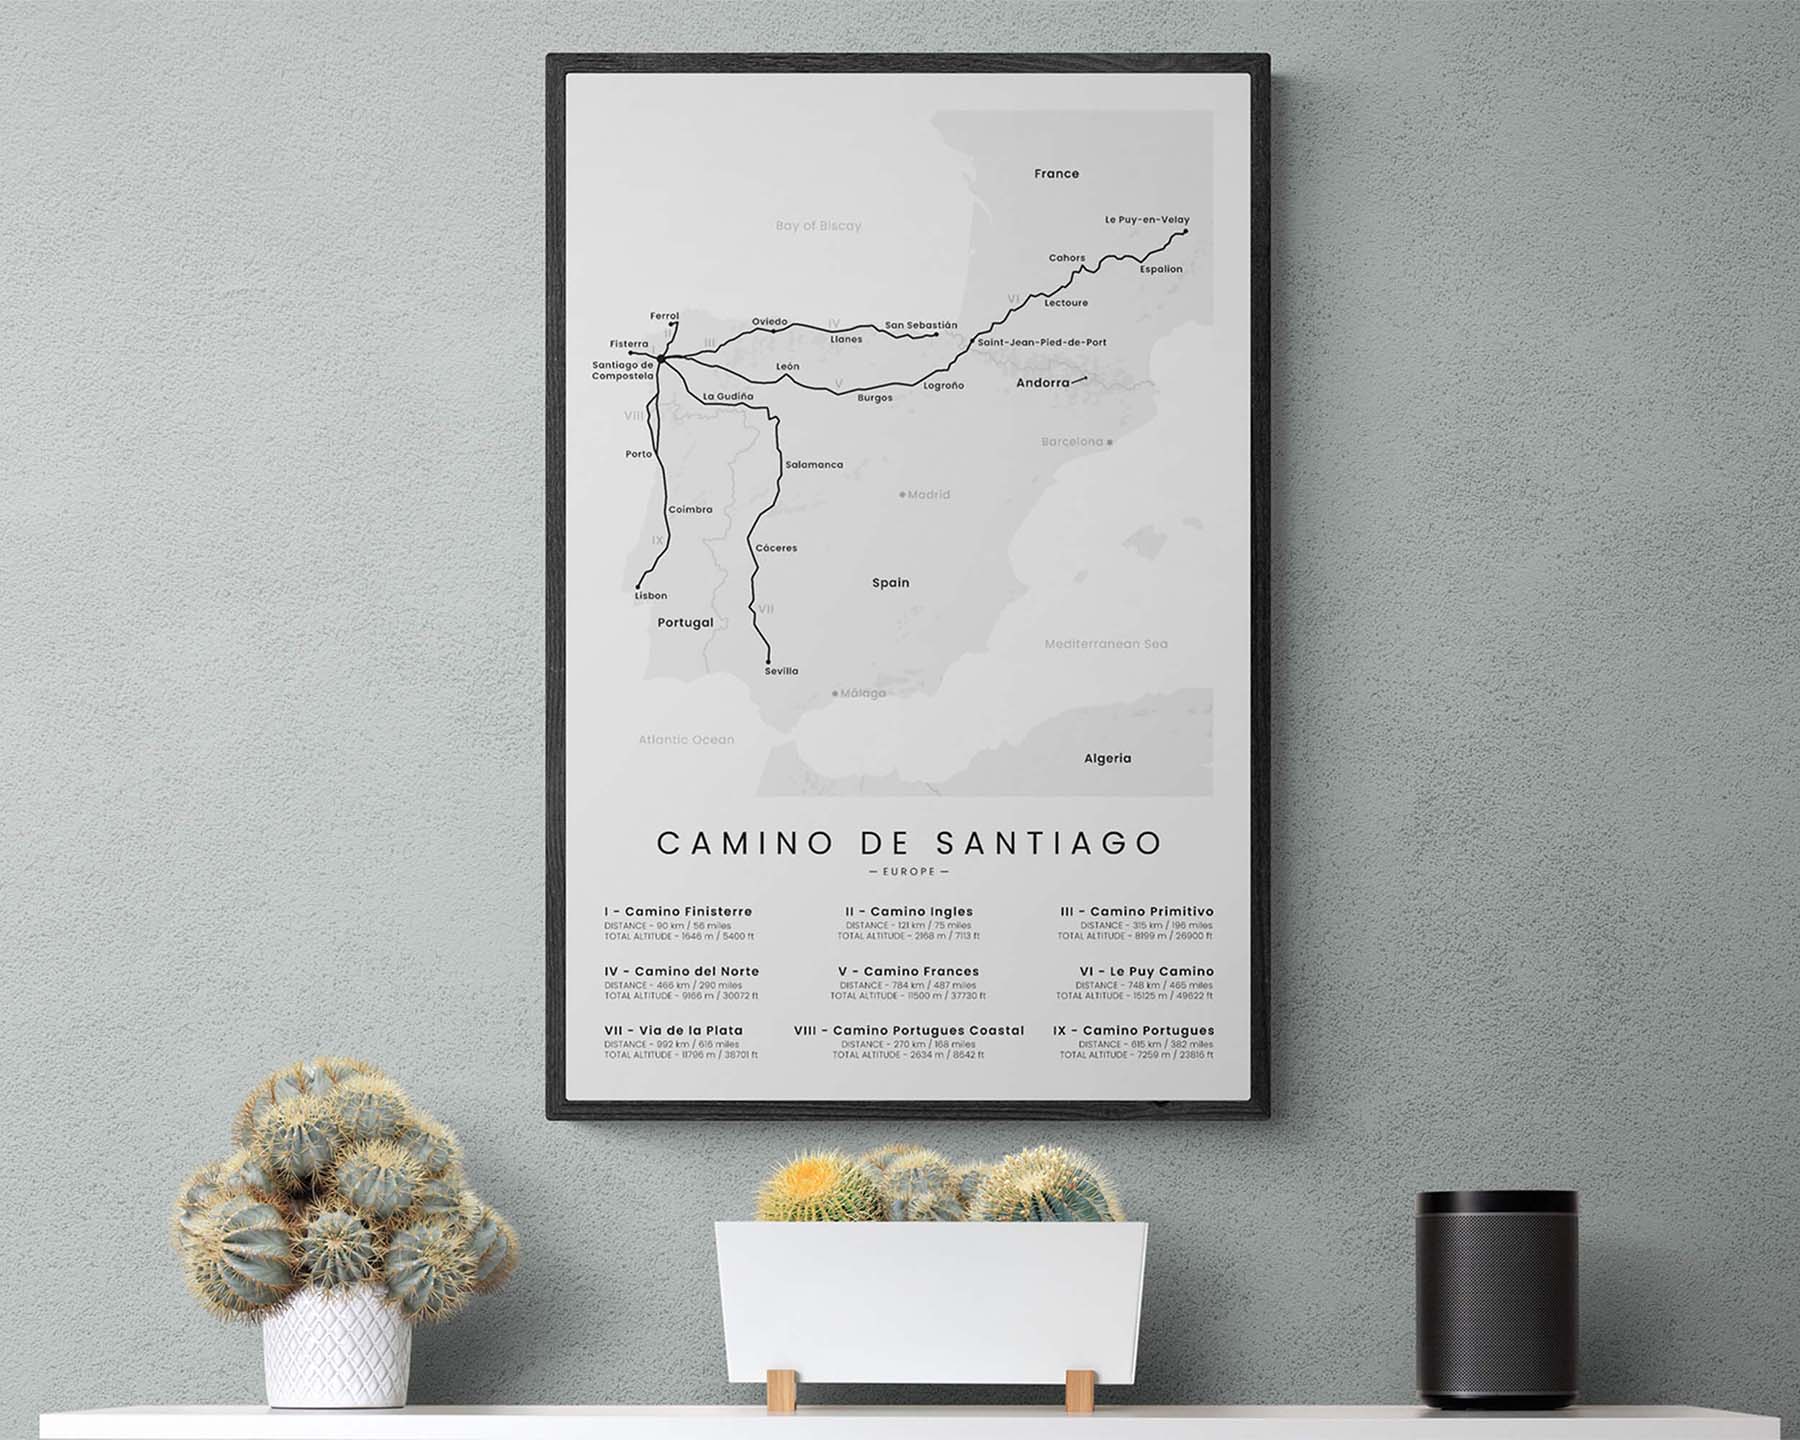 Camino de Santiago (Camino Primitivo) path poster in minimal room decor